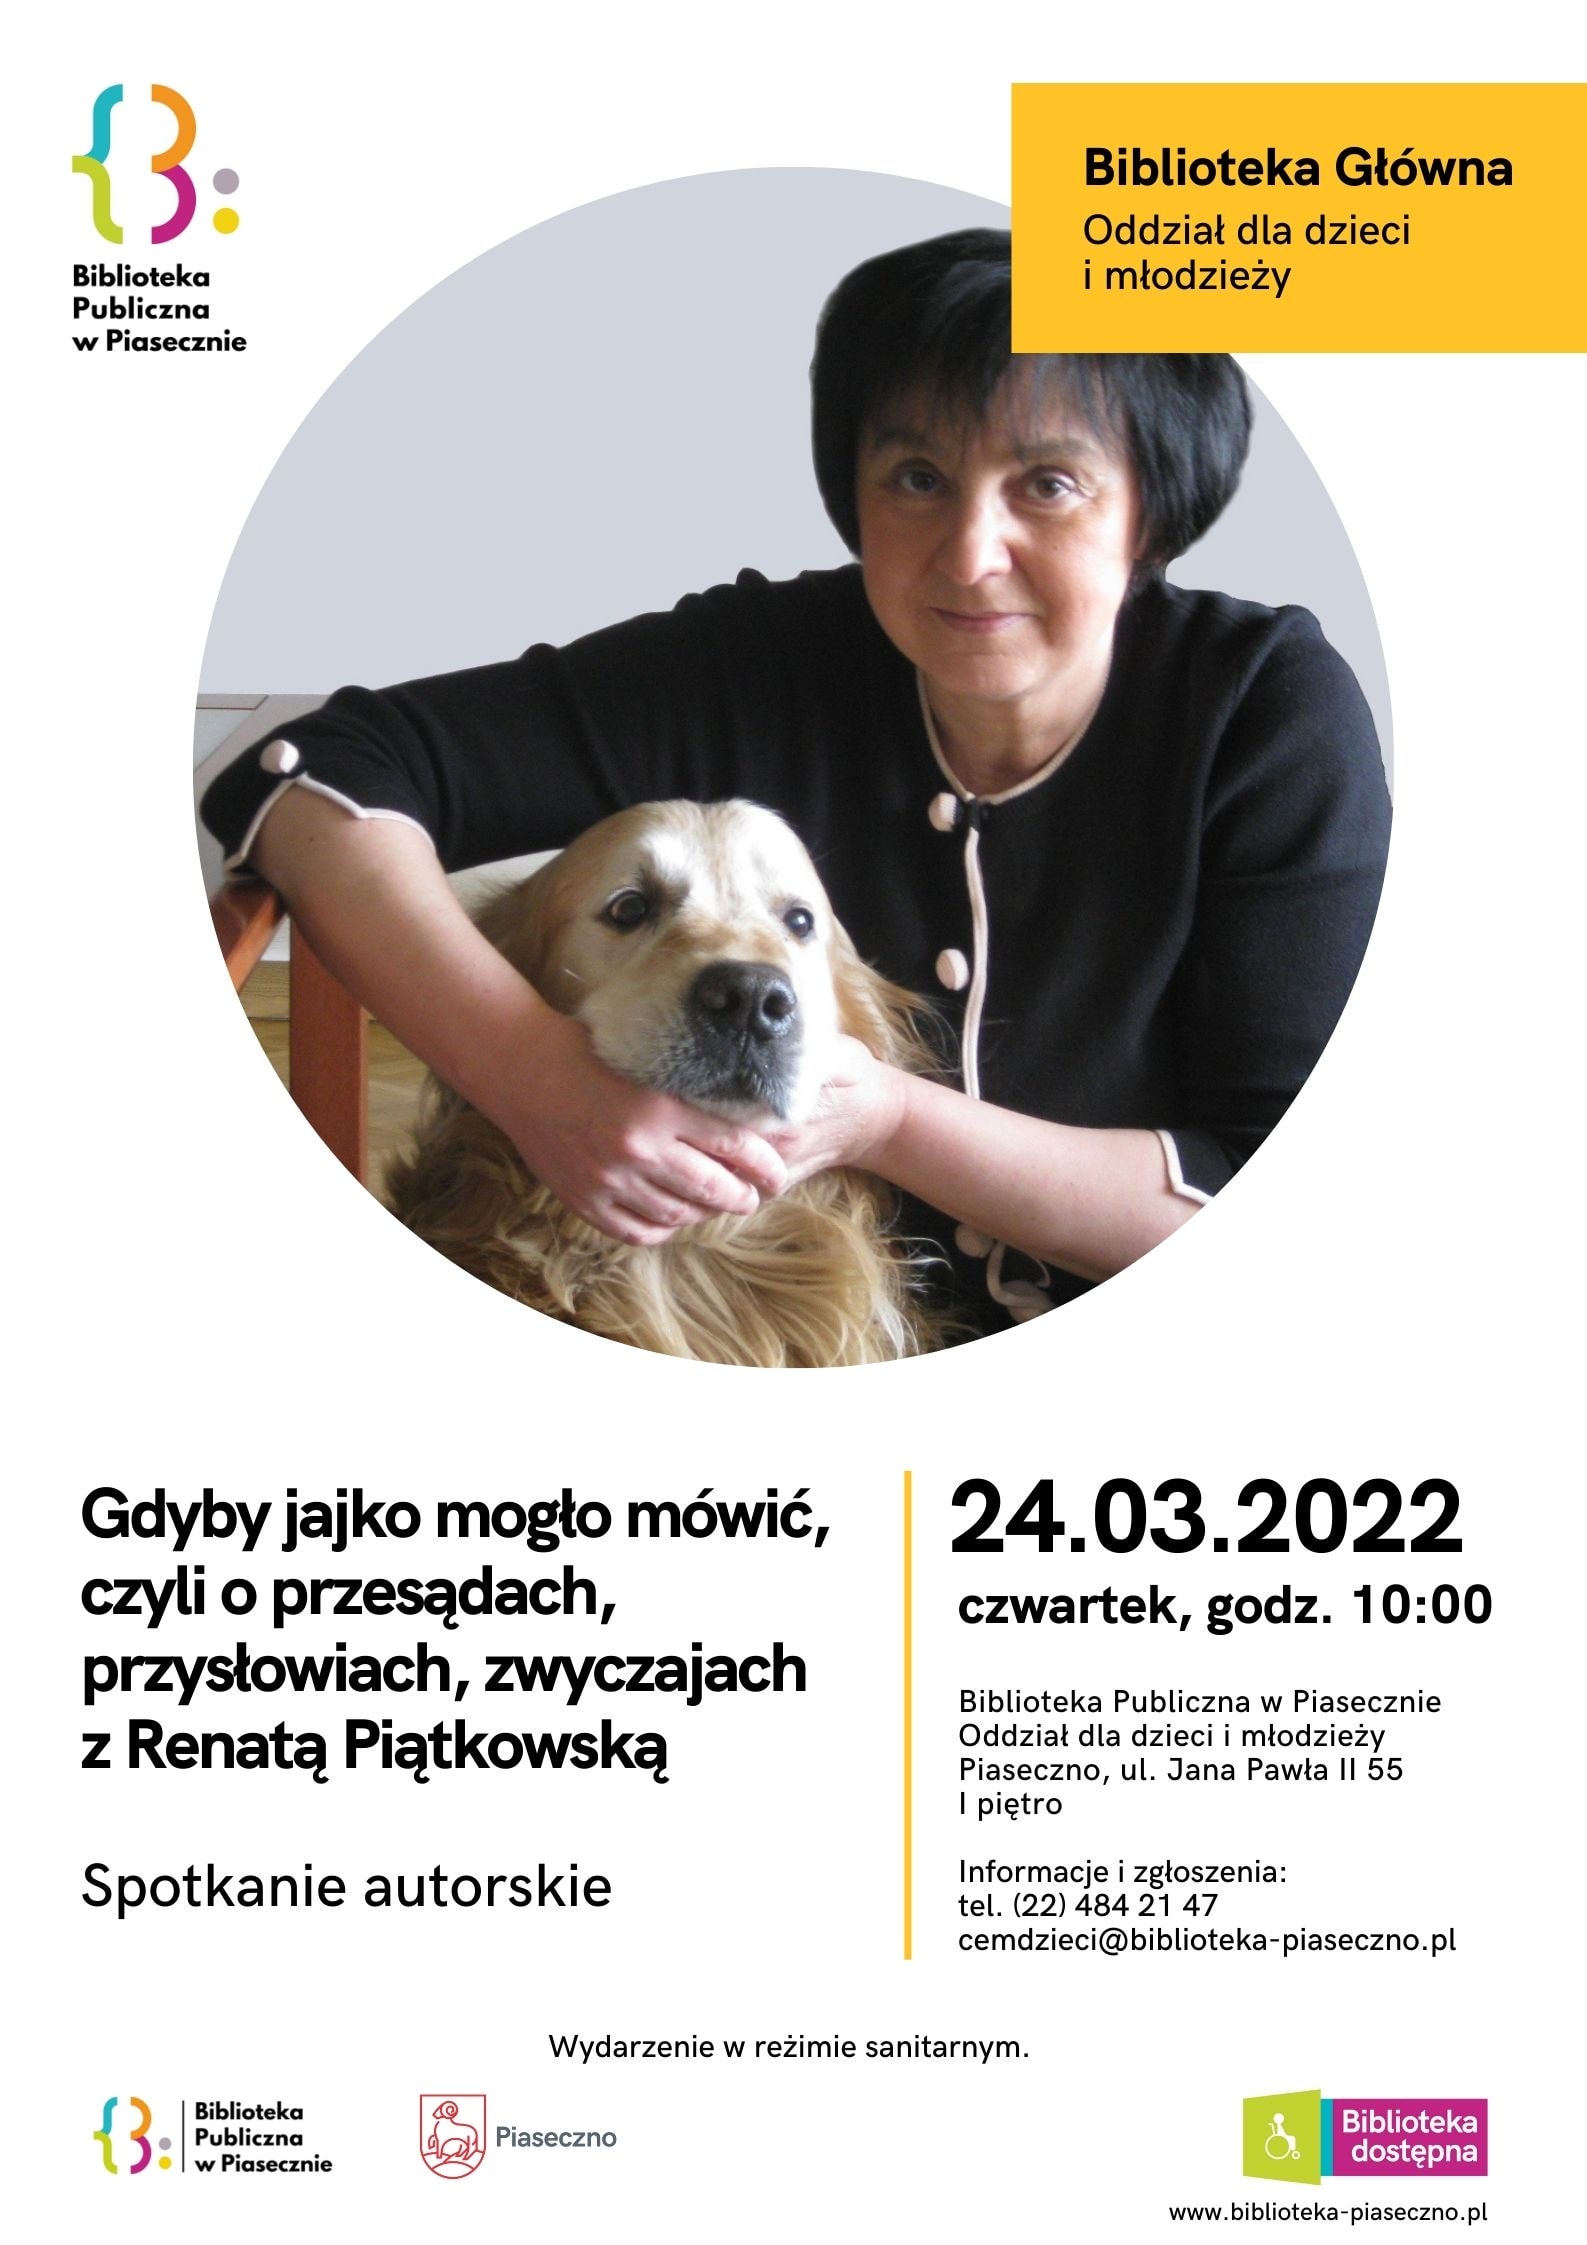 Plakat na spotkanie autorskie z Renatą Piątkowską w Bibliotece Głównej CEM Oddział dla dzieci i młodzieży